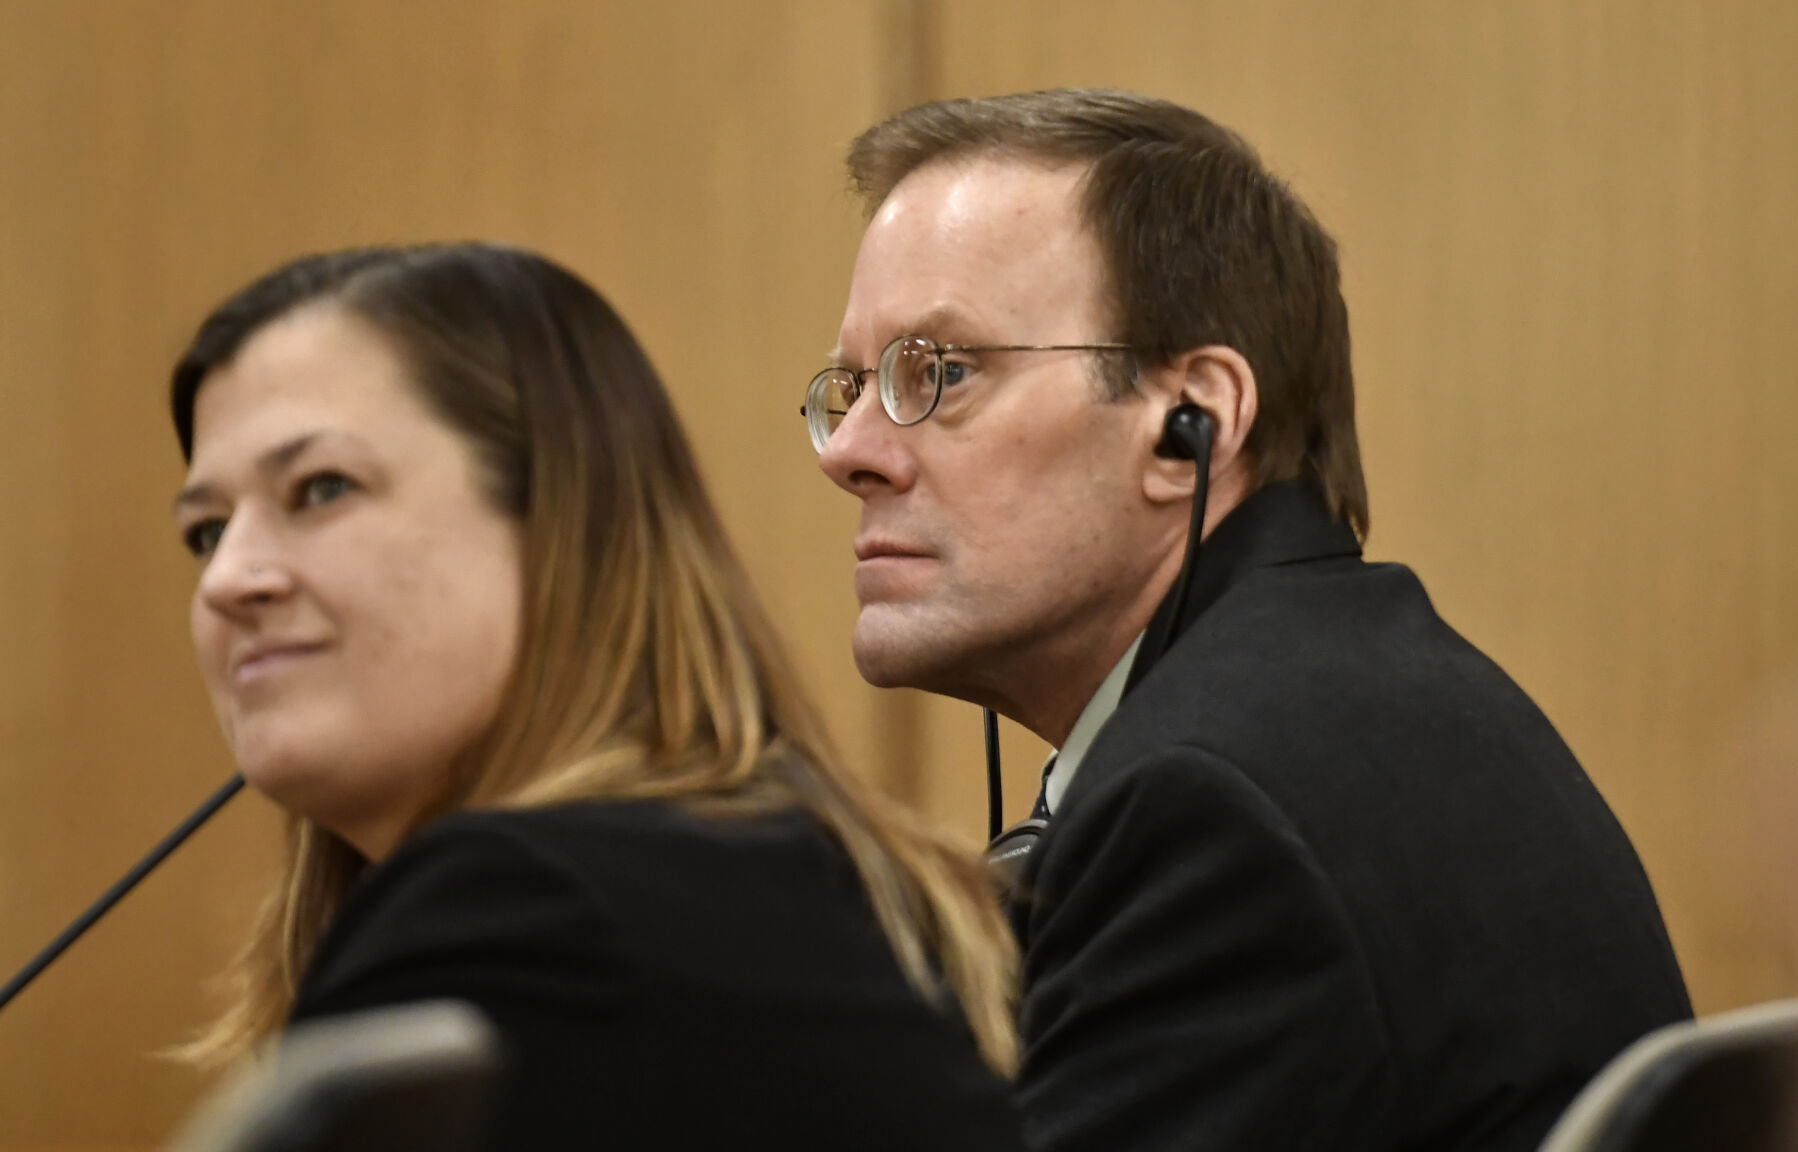 Mark Jensen found guilty in poisoning death of wife Julie Jensen pic